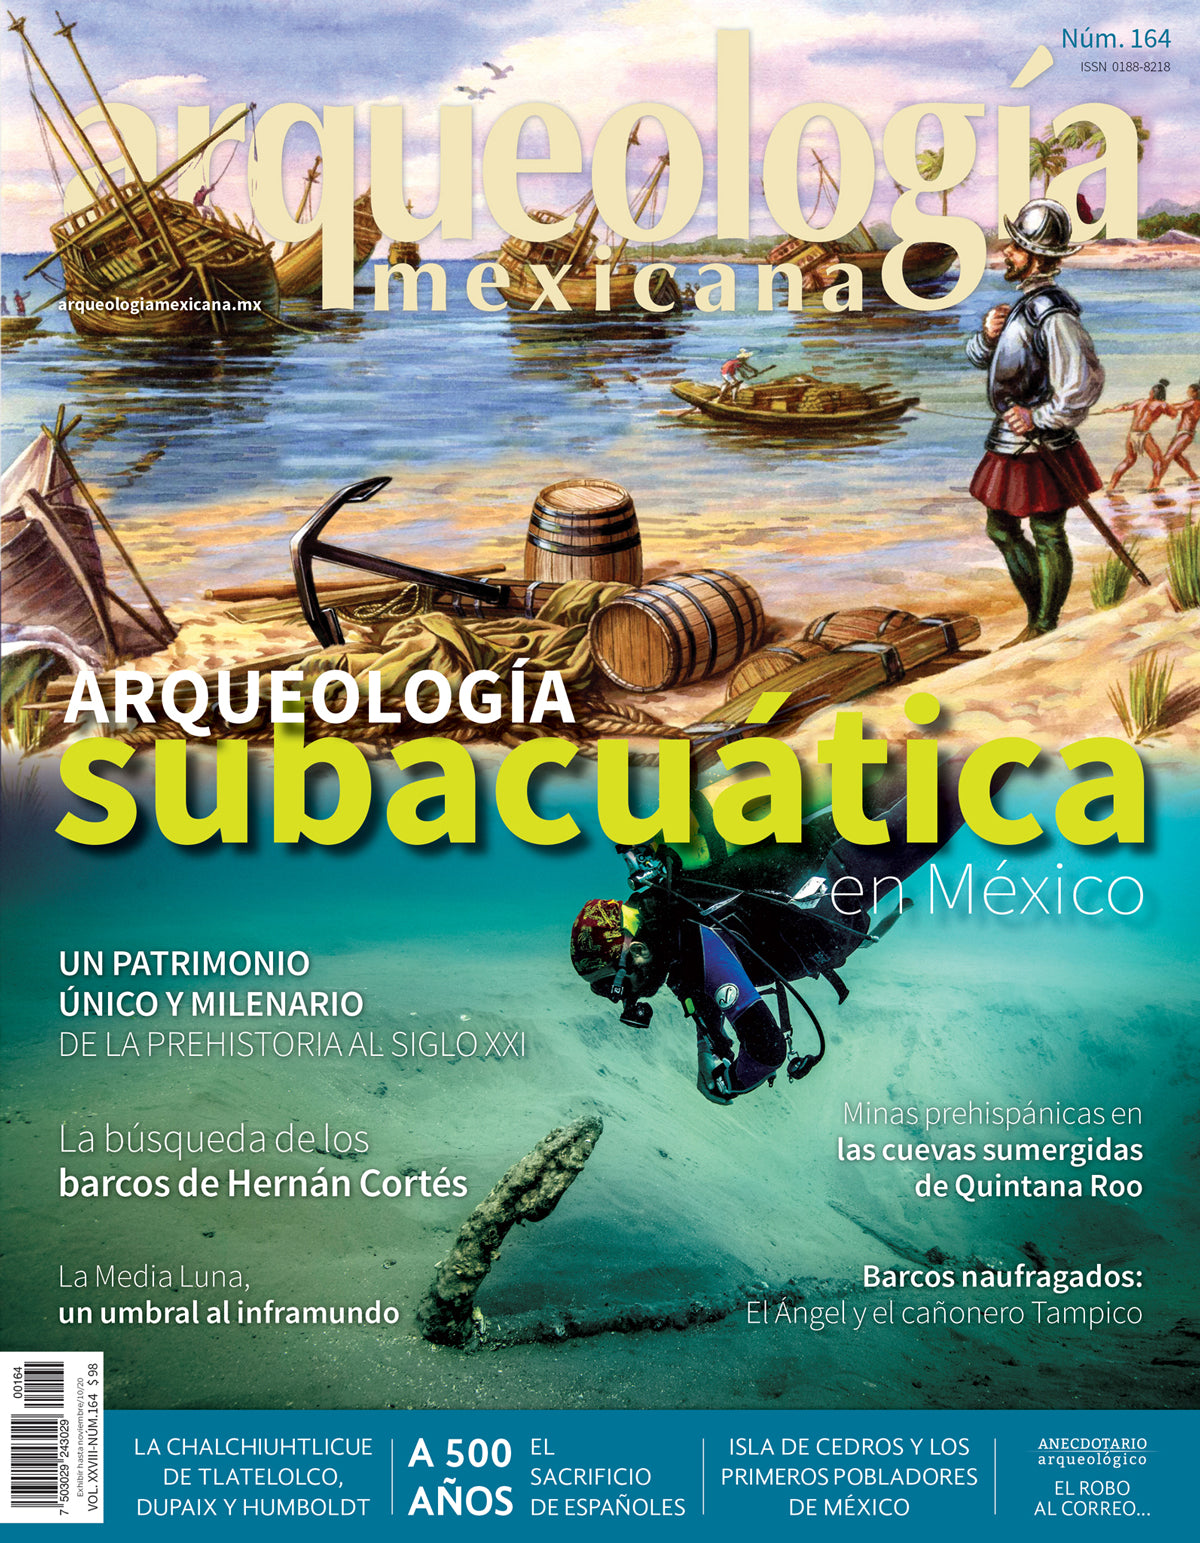 Arqueología subacuática en México